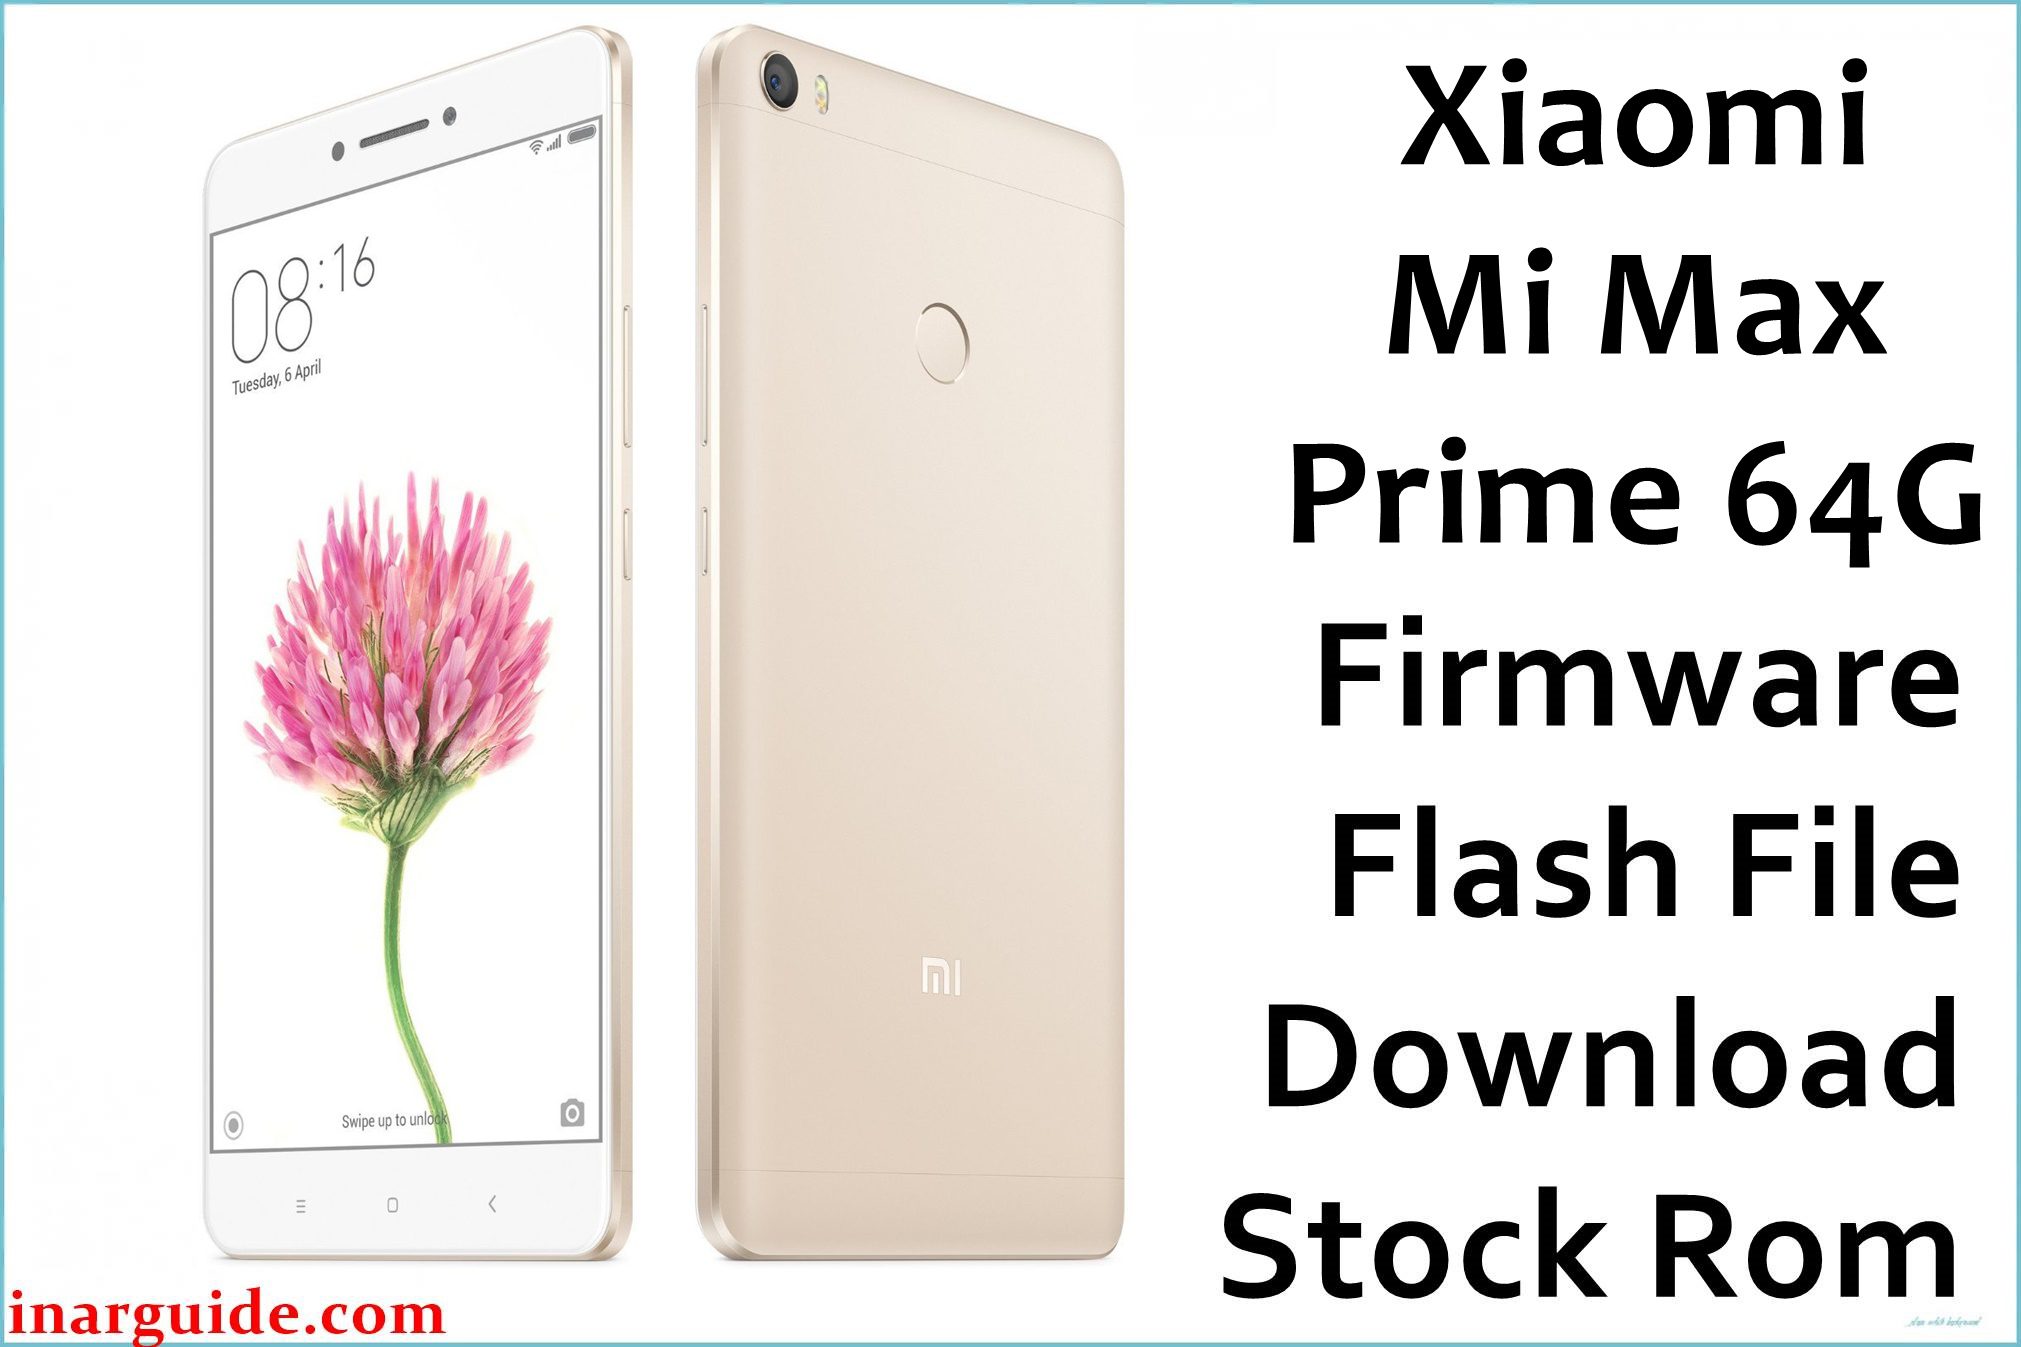 Xiaomi Mi Max Prime 64G